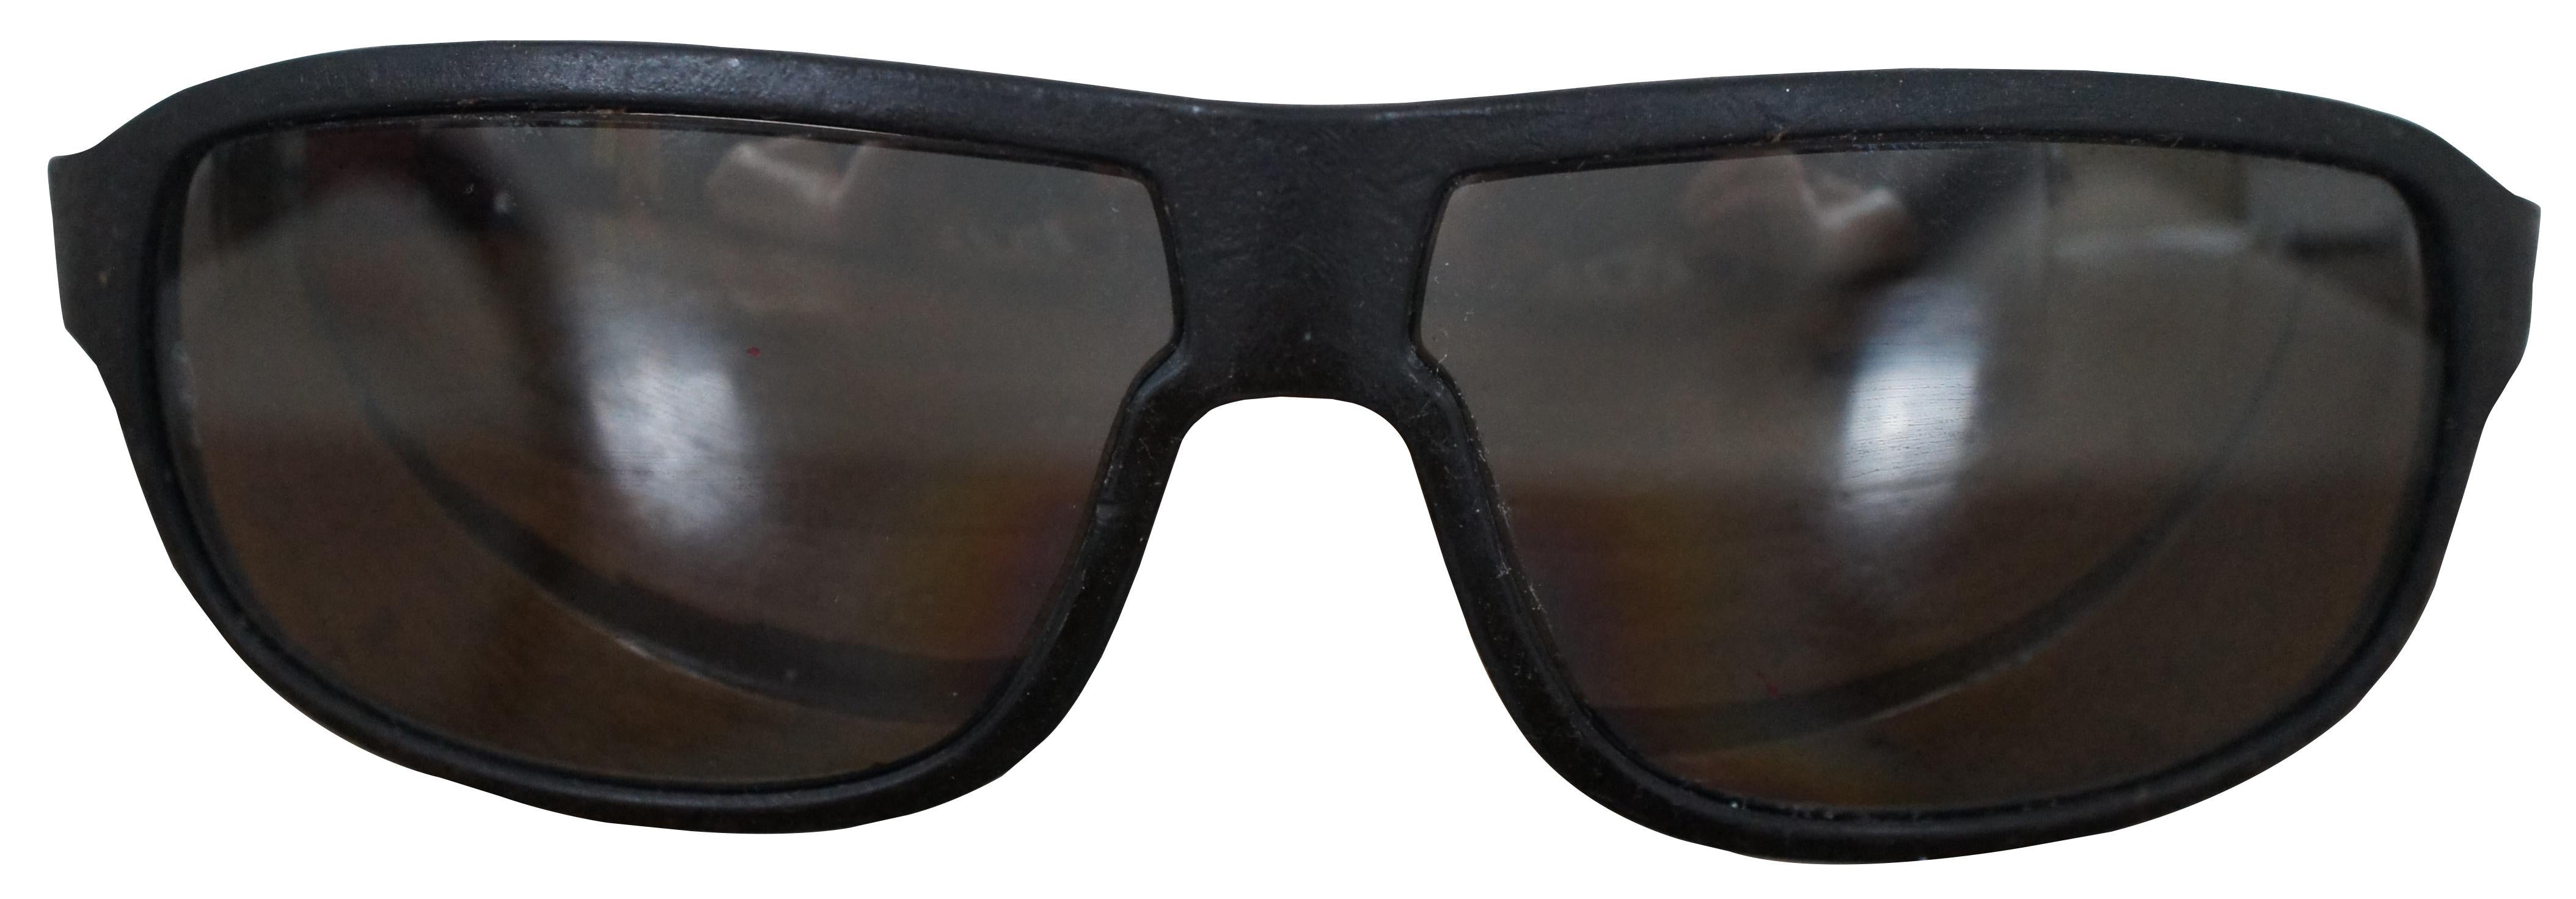 cartier 125 sunglasses